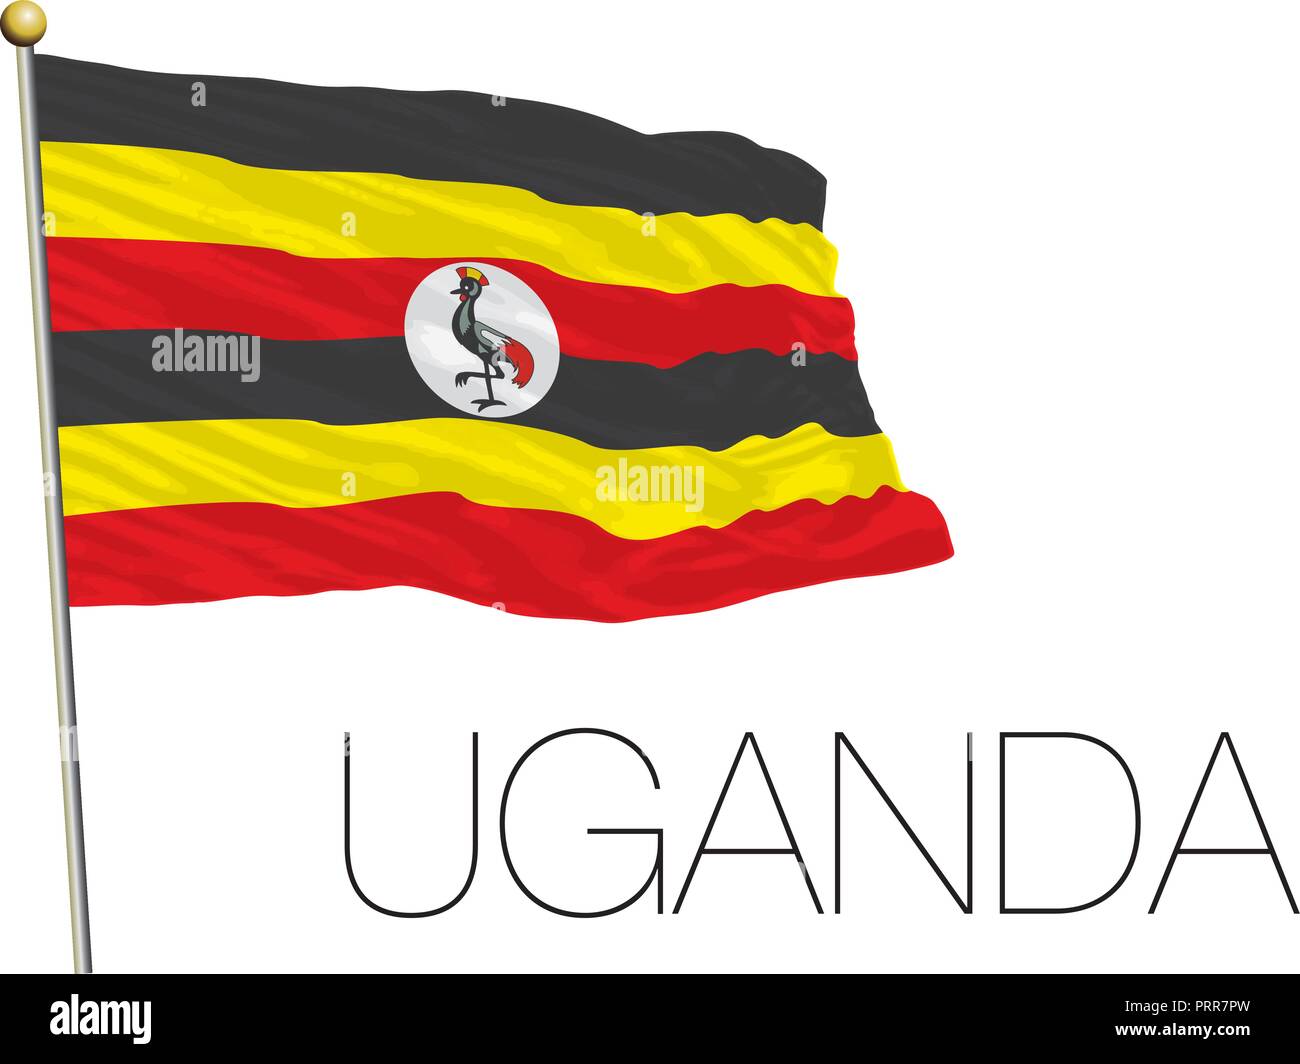 Uganda official flag, vector illustration Stock Vector